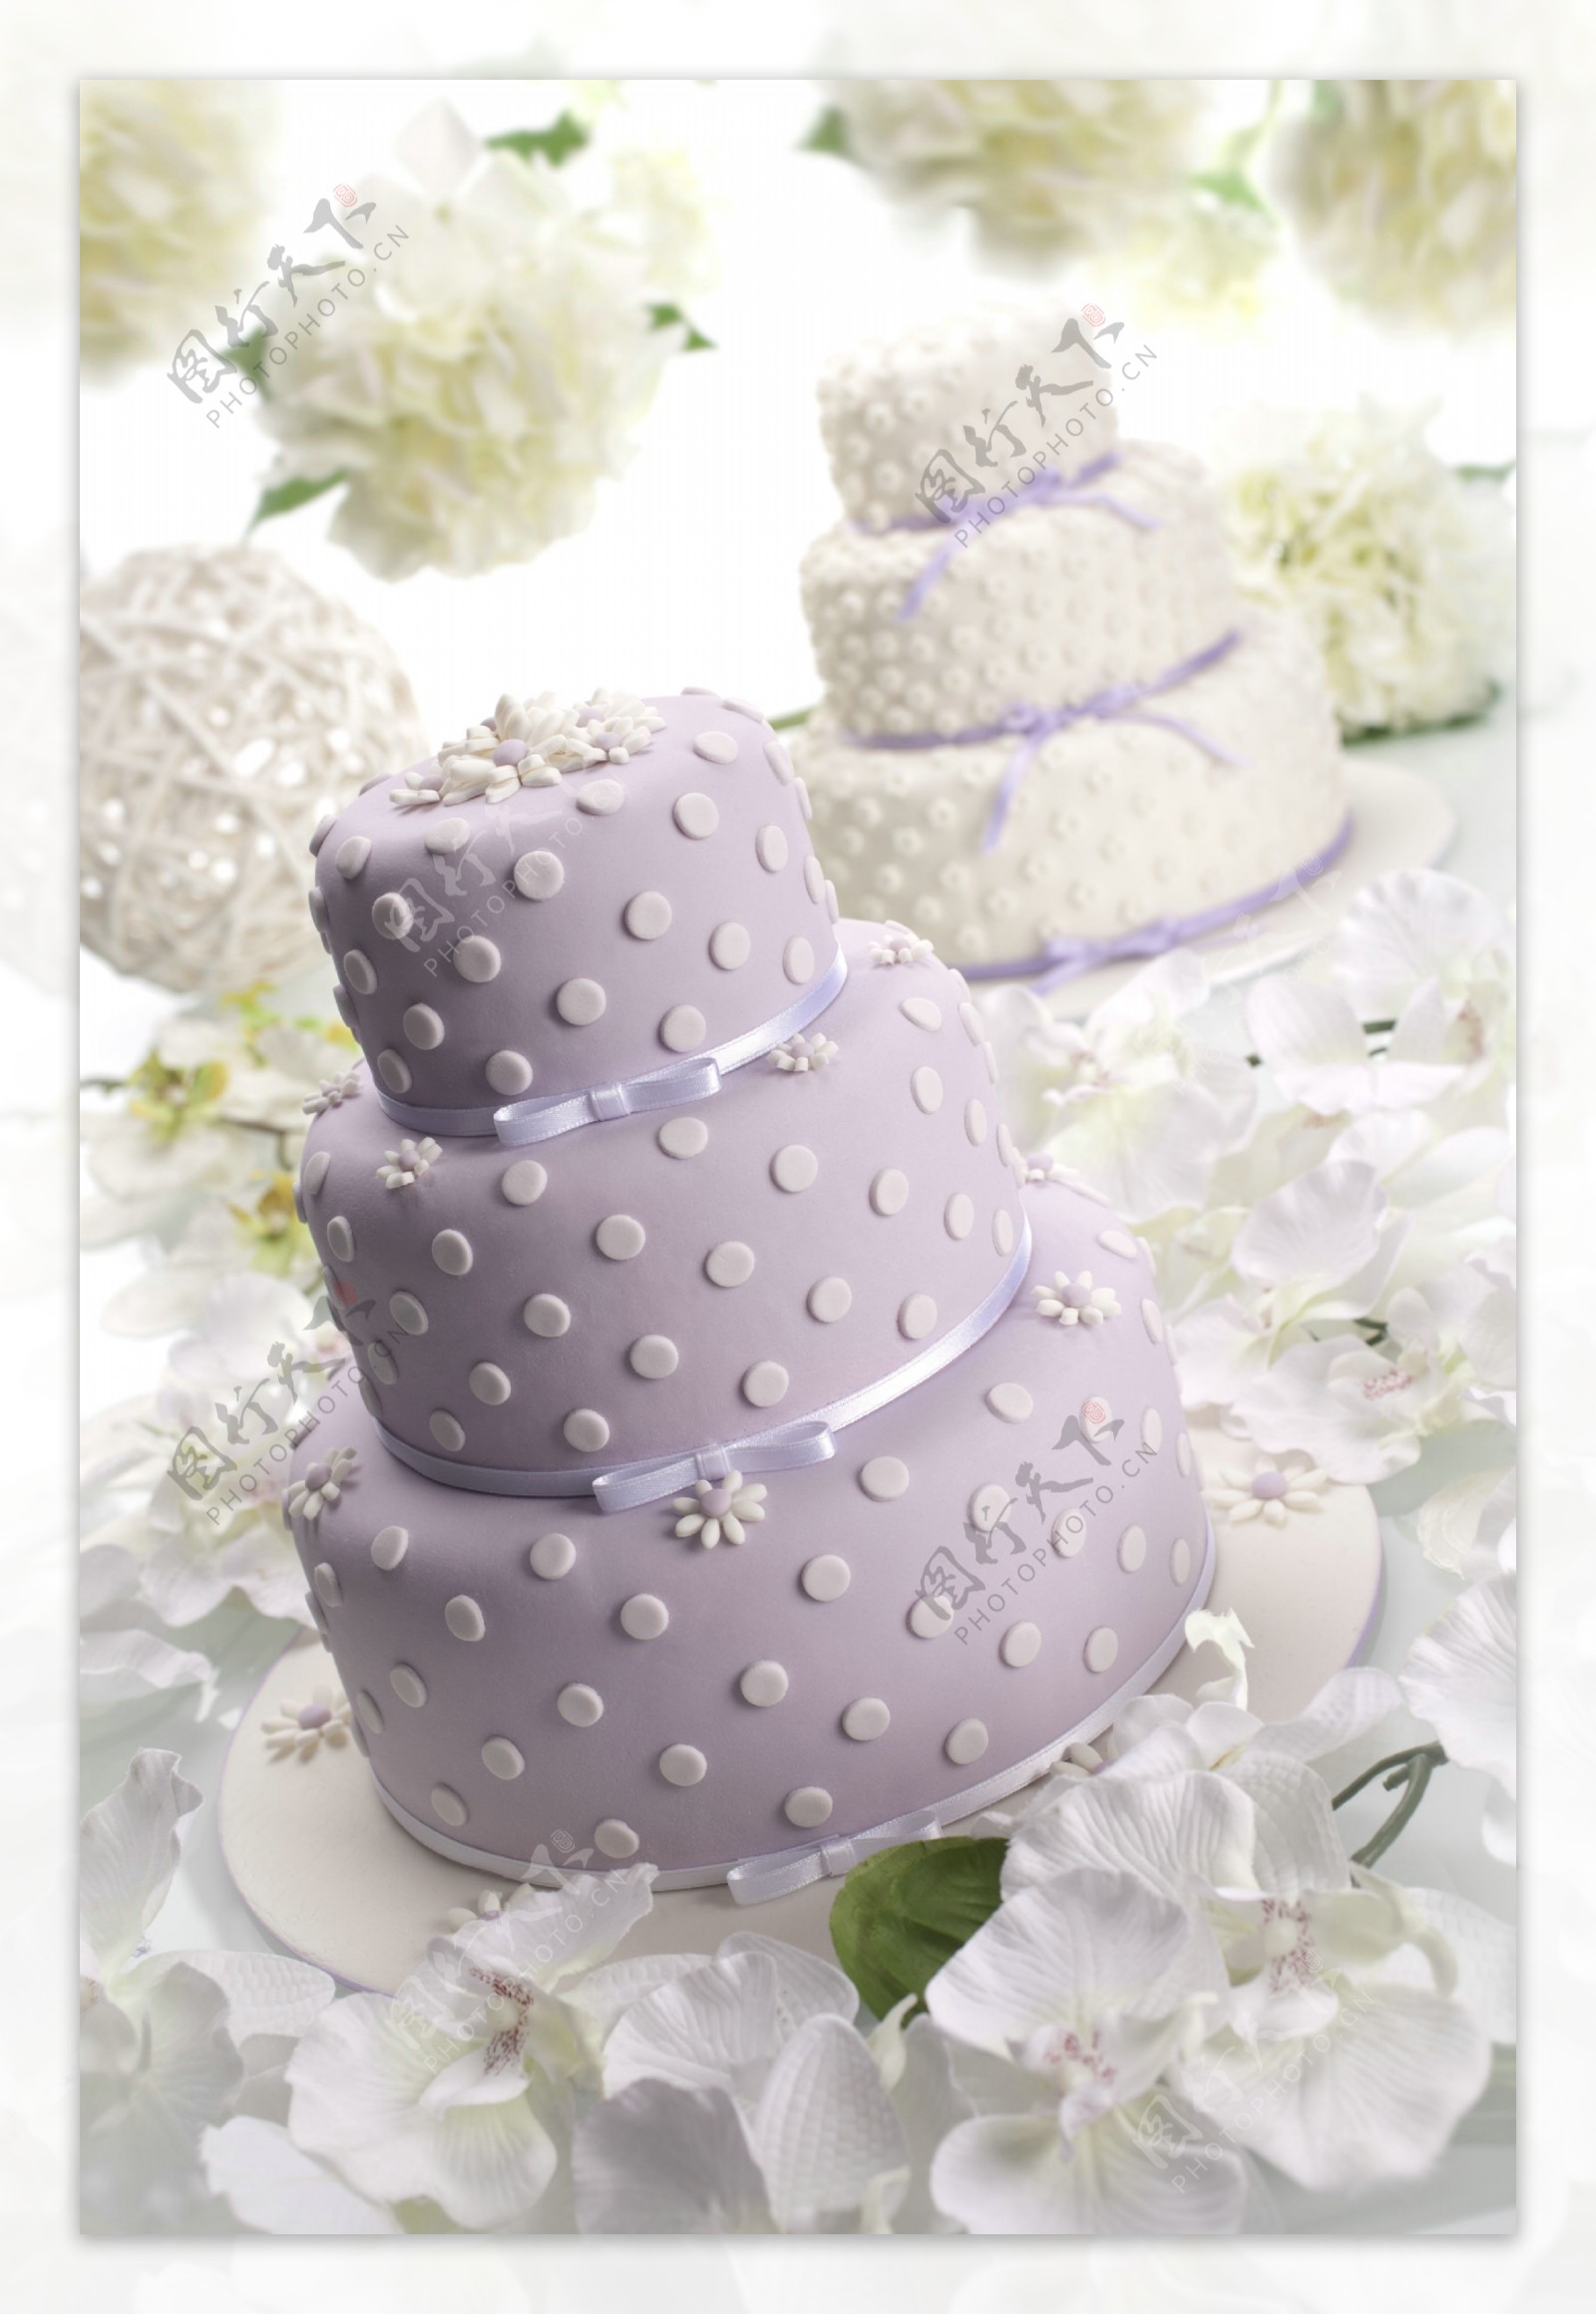 蛋糕与花瓣图片